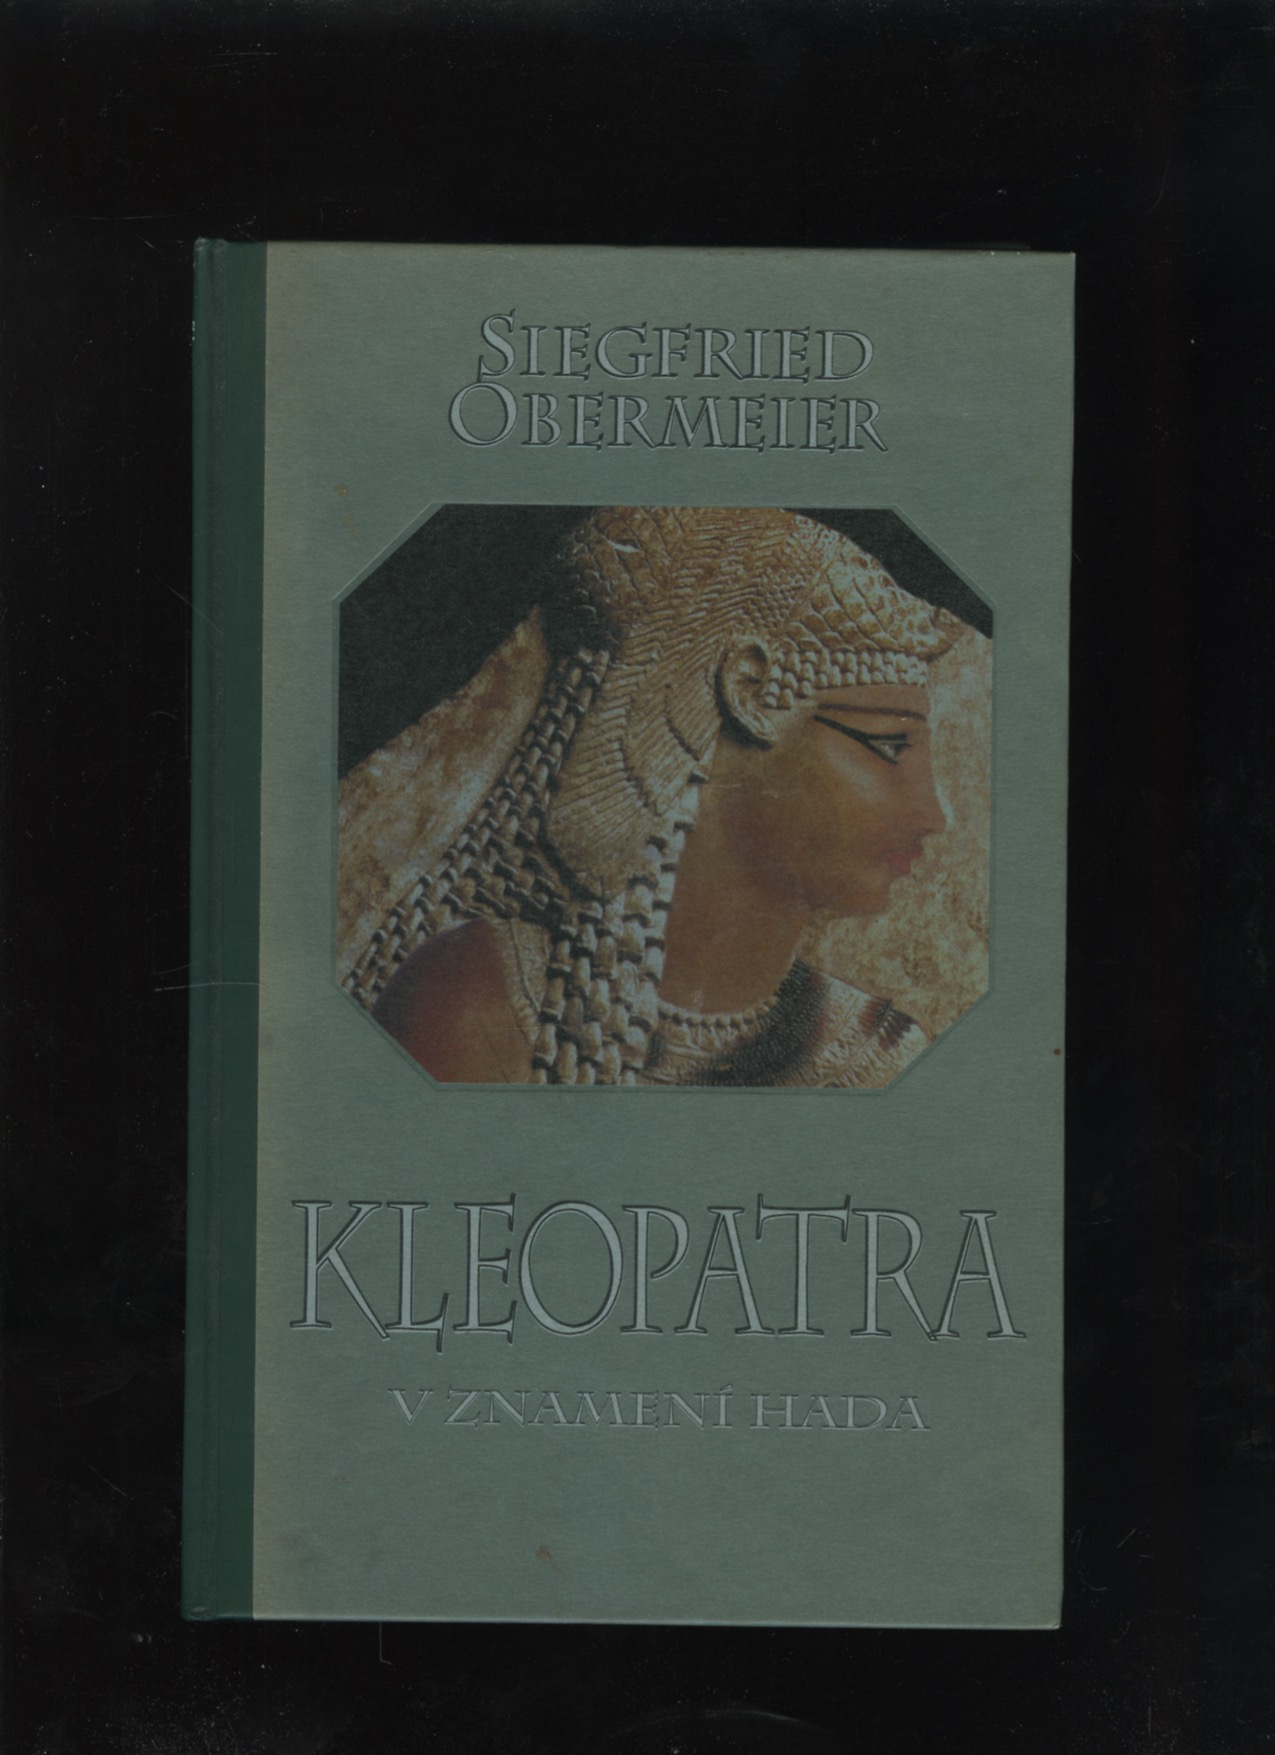 Kleopatra - V znamení hada (Siegfried Obermeier)